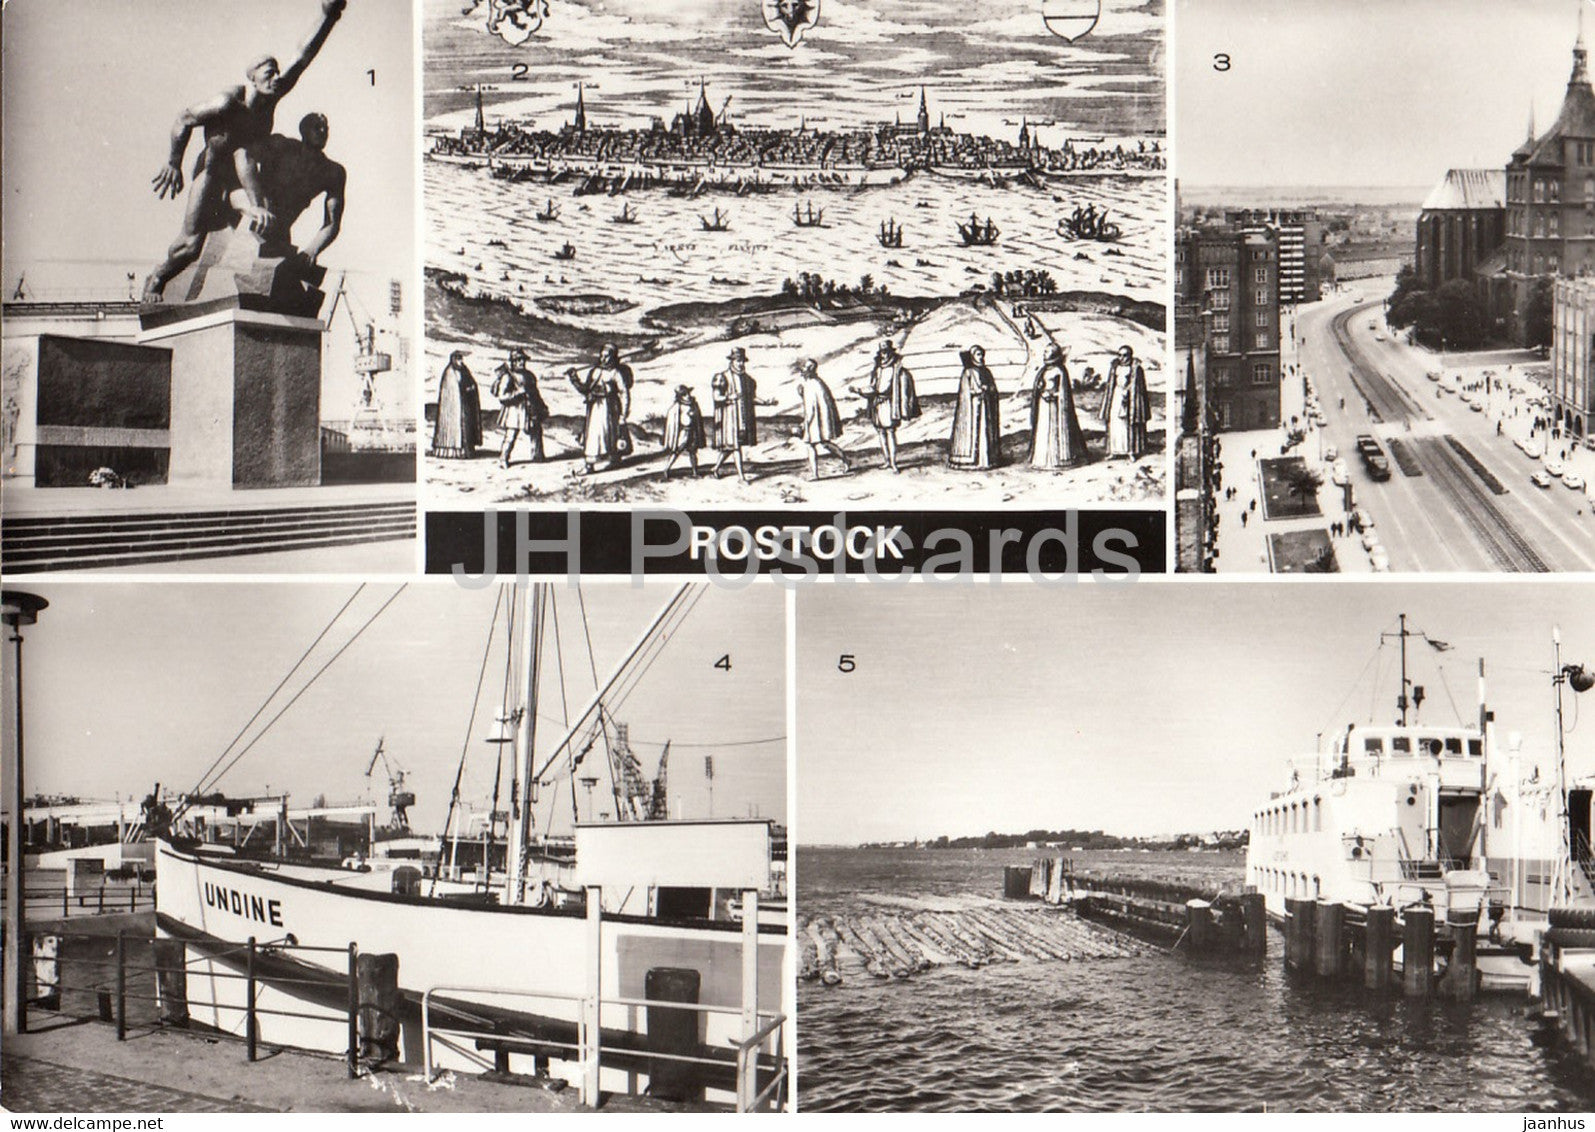 Rostock - Matrosen Rostock - Museum - Lange Strasse - Anlegenstelle der Undine - ship - boat - Germany DDR - unused - JH Postcards